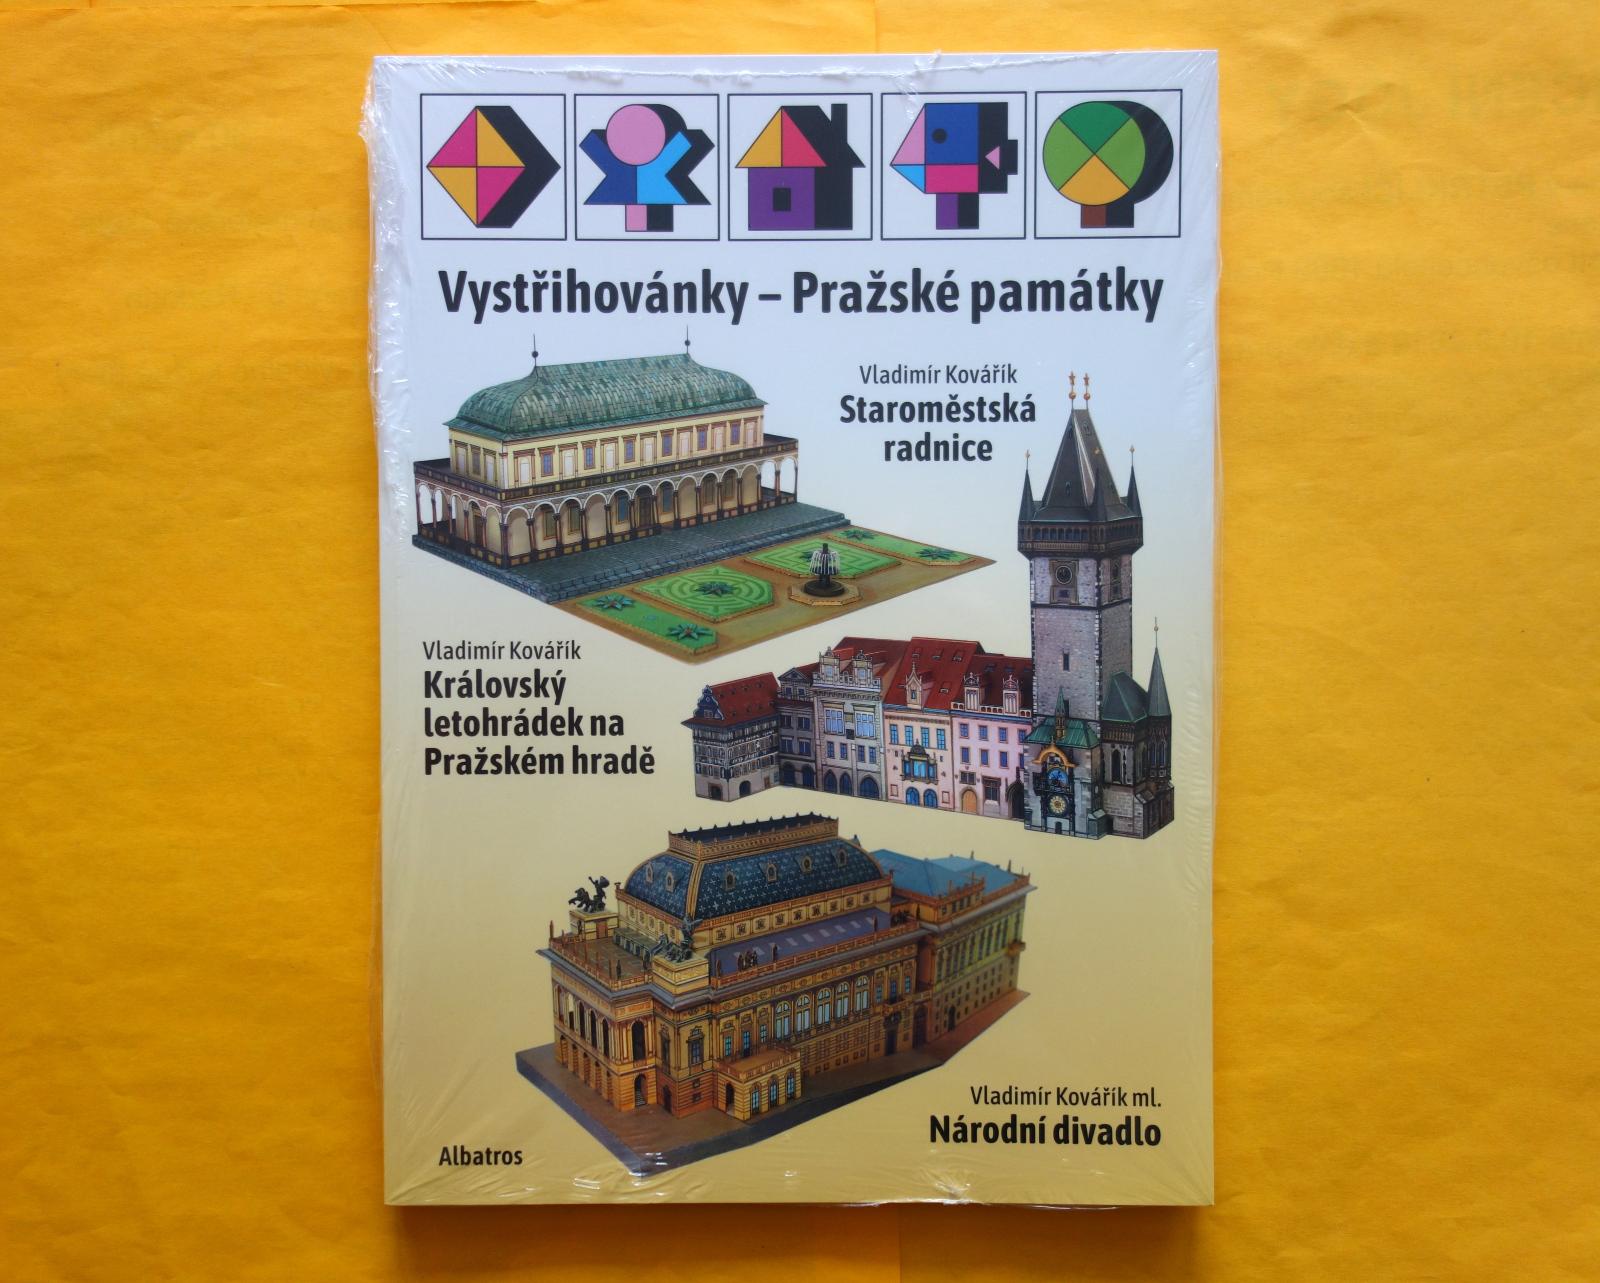 Vystrihovačky - 3x Pražské pamiatky-Vl. Kovarík/ INTAKTNÁ,ZATAVENÁ kniha - Modelárstvo